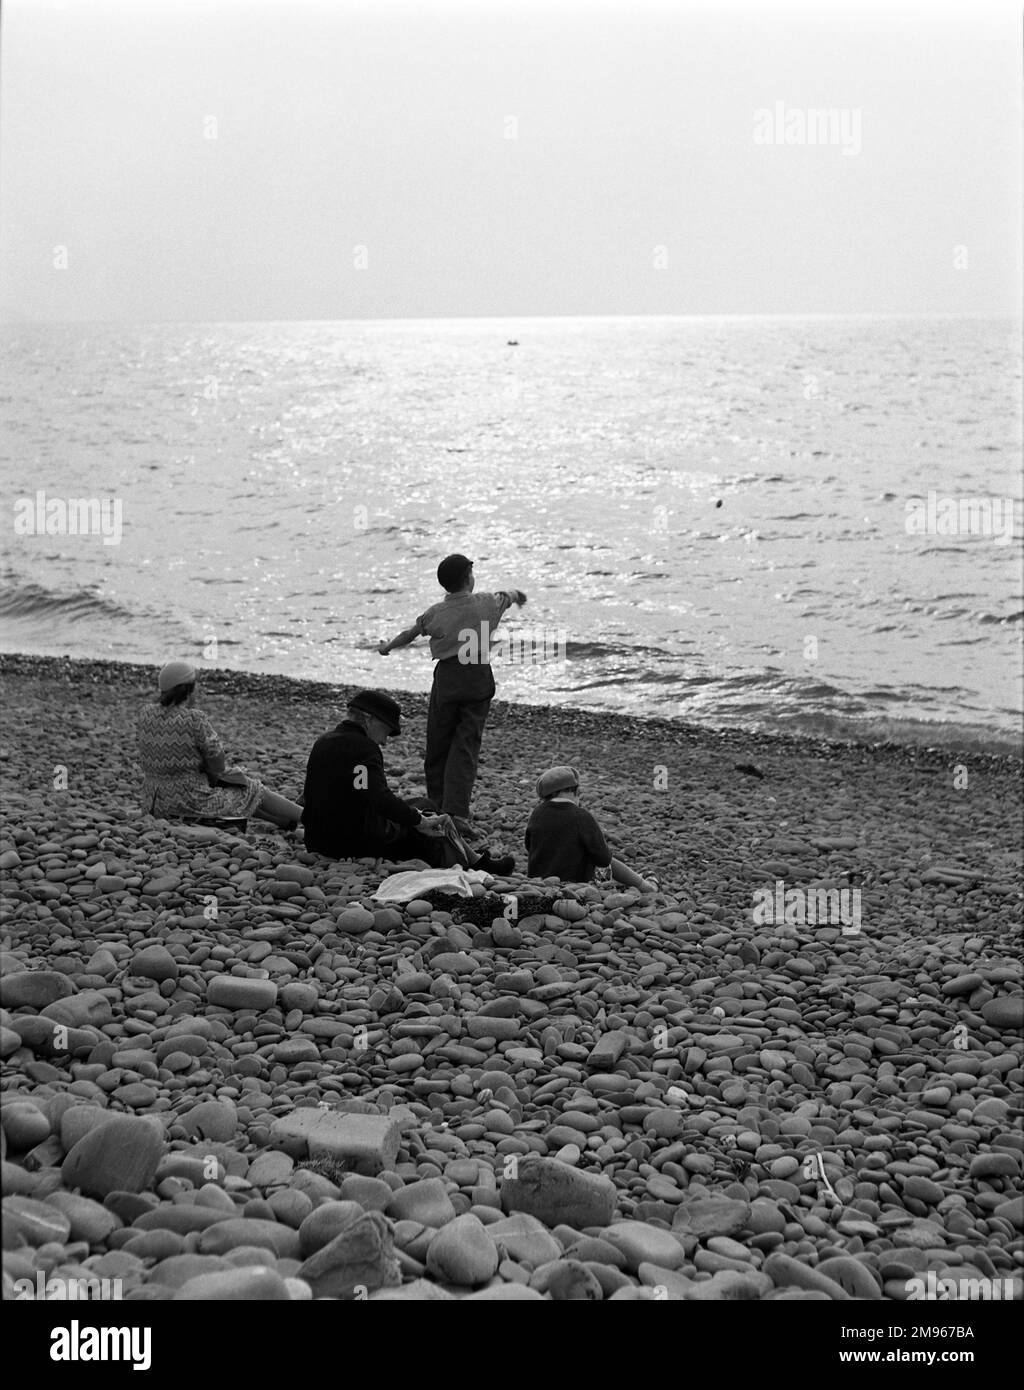 Skimming pietre. Un ragazzino, in piedi accanto alla sua famiglia seduto, sbatte pietre piatte nel mare dalla spiaggia di ciottoli, cercando di farli scorrere attraverso la superficie alla luce della sera. Fotografia di Norman Synge Waller Budd Foto Stock